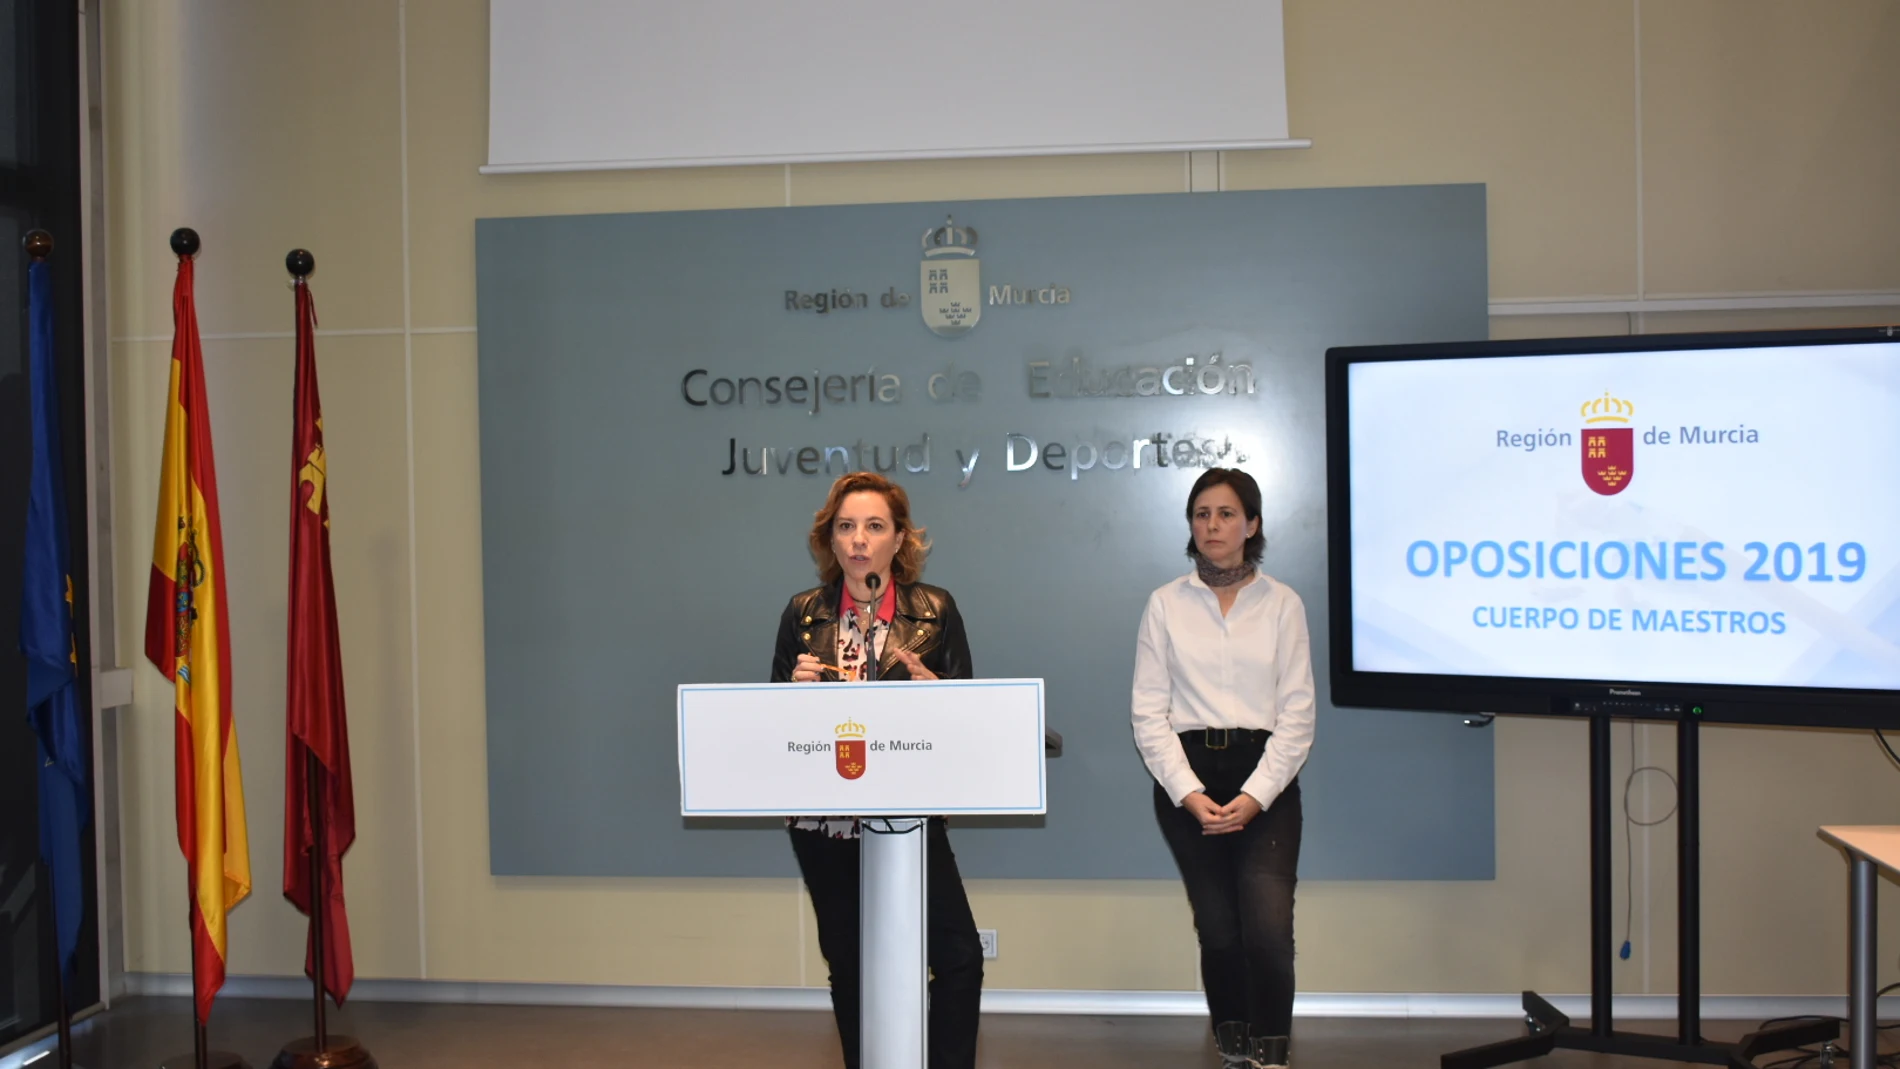 La consejera de Educación, Juventud y Deportes, Adela Martínez-Cachá, informó ayer sobre la convocatoria de oposiciones al Cuerpo de Maestros en la Región de Murcia